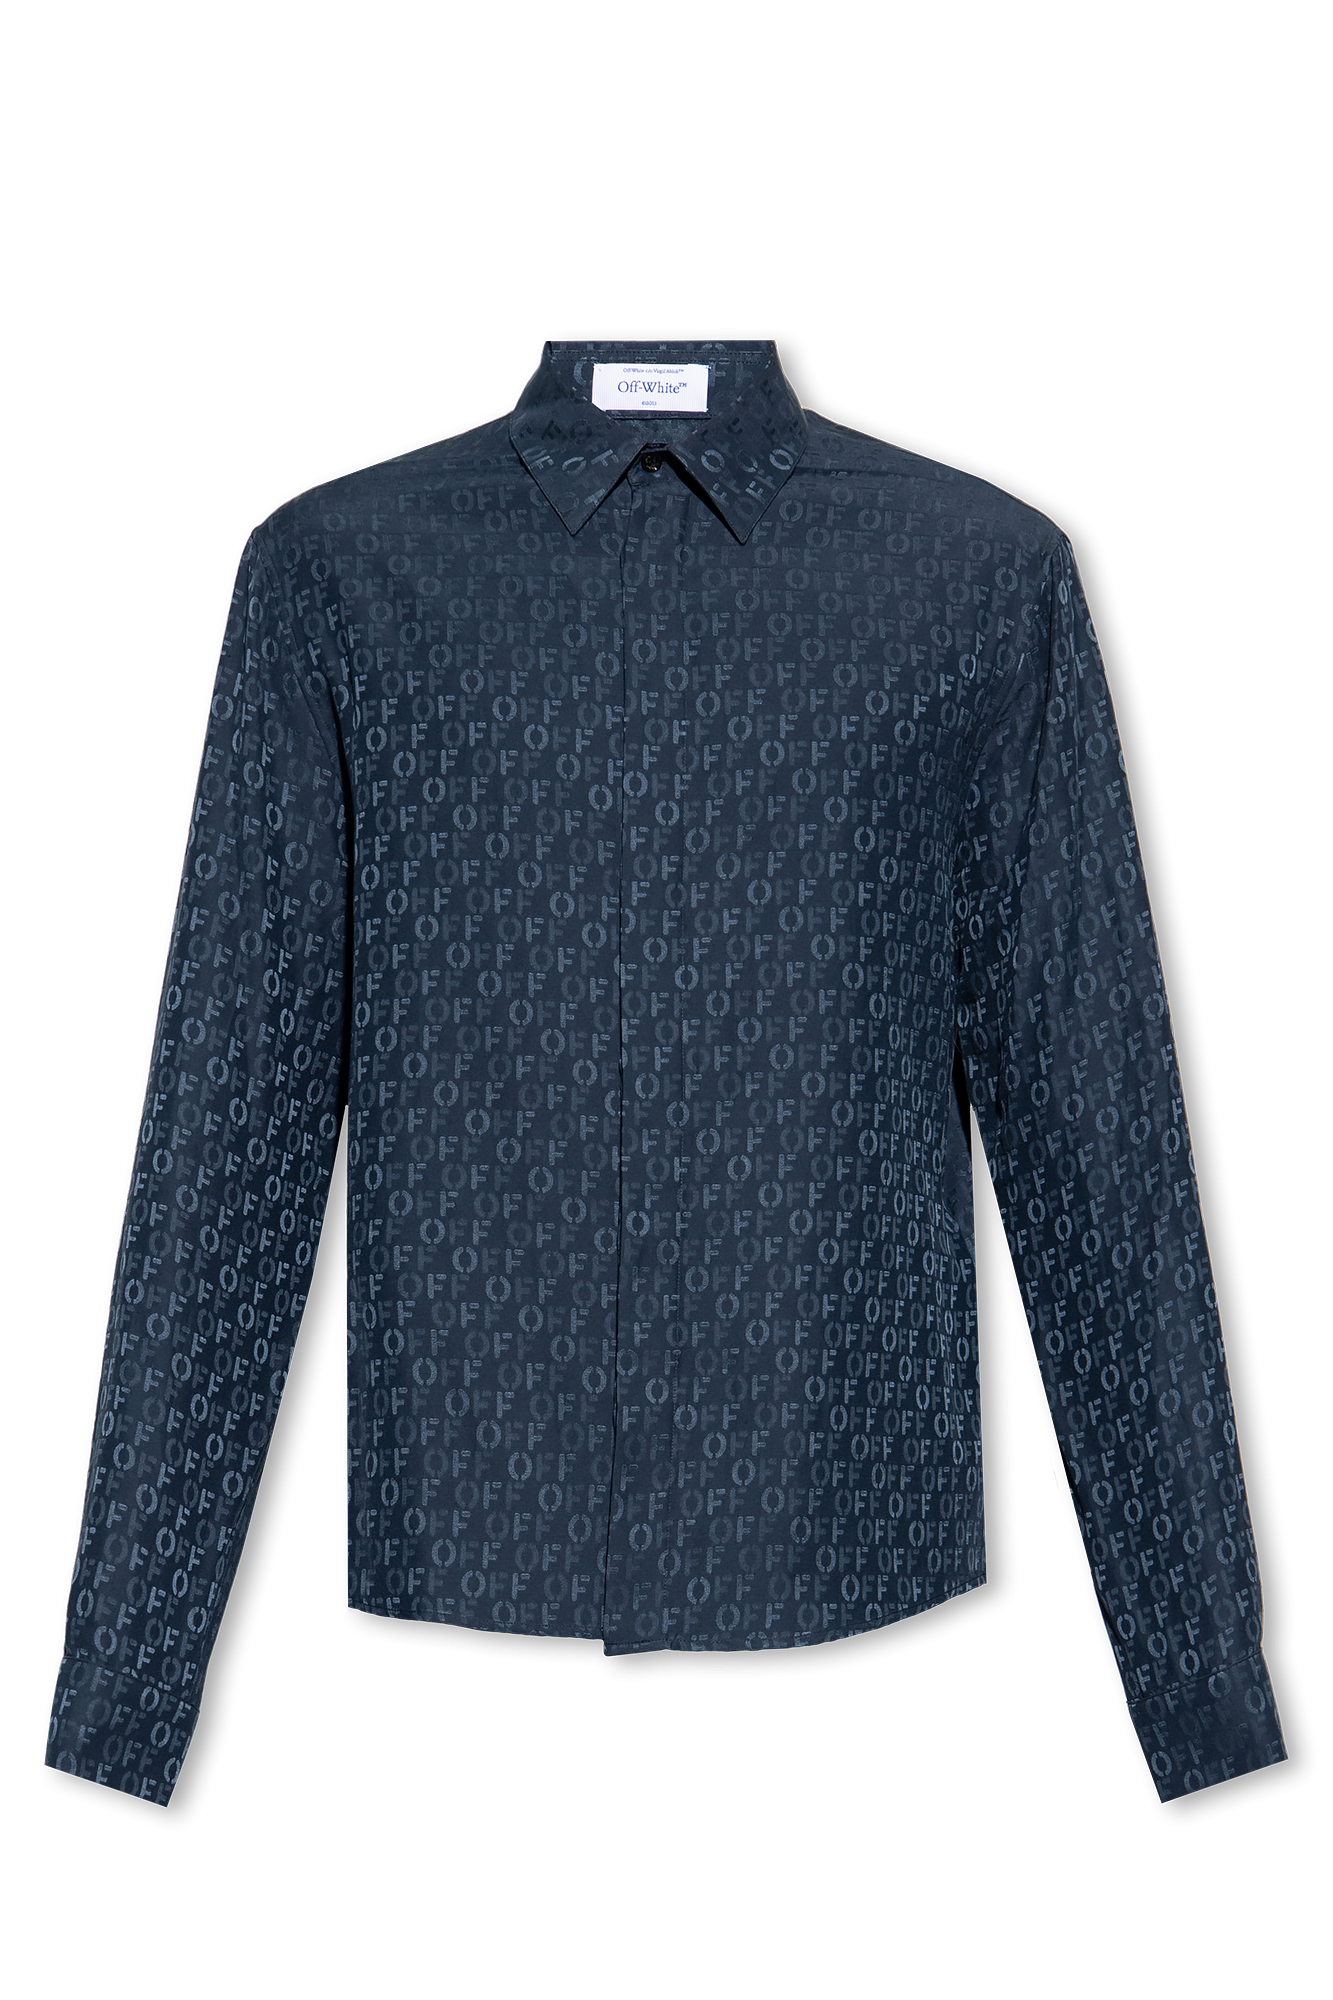 Louis Vuitton Men's Silk Shirt